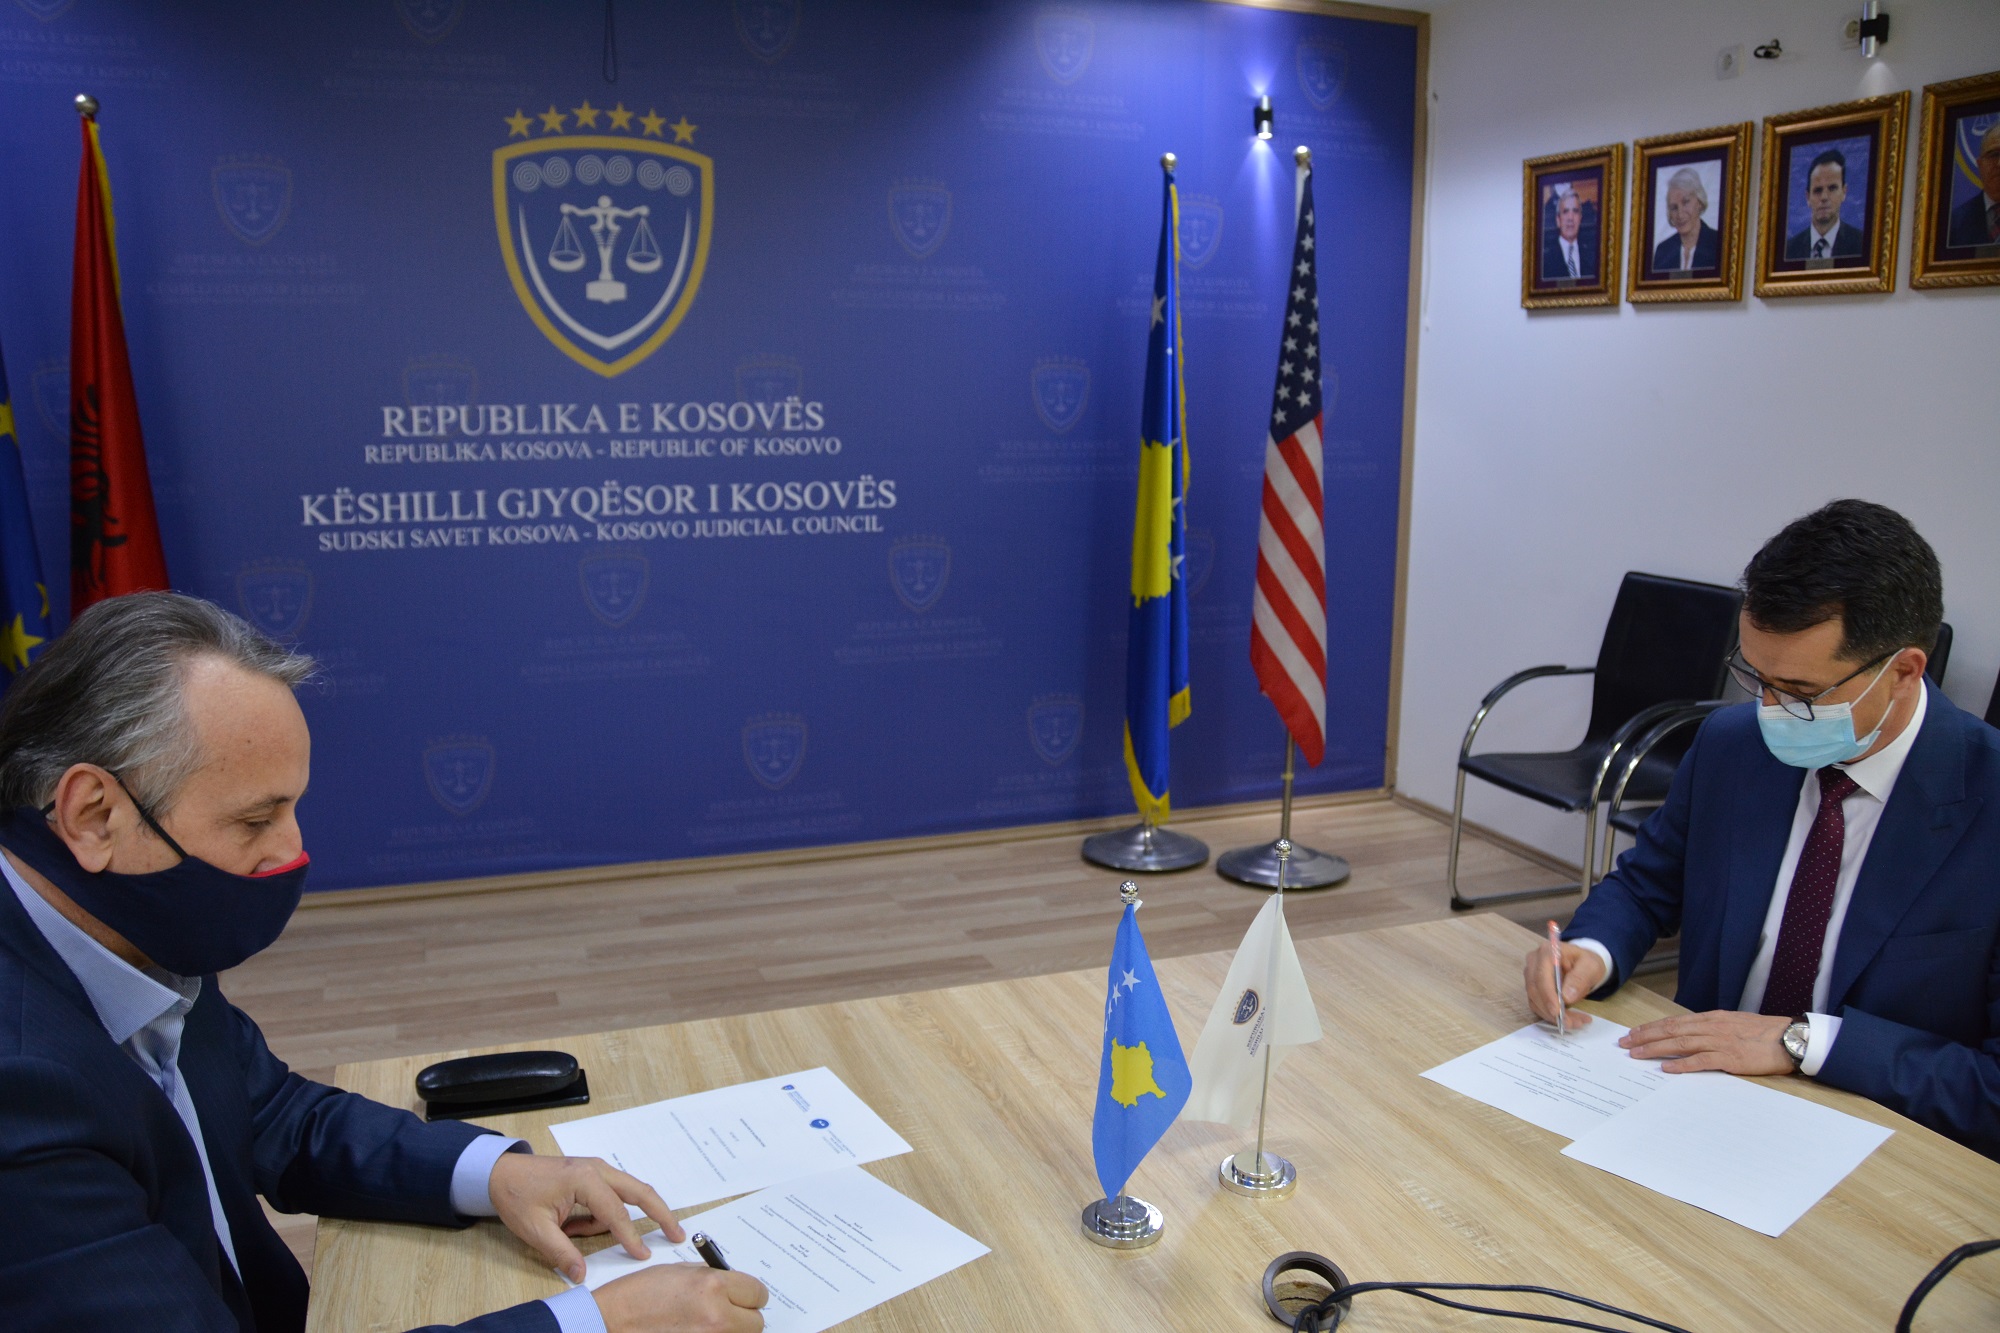 Memorandumi i Bashkëpunimit mes Fakultetit Juridik dhe Këshillit Gjyqësor të Kosovës